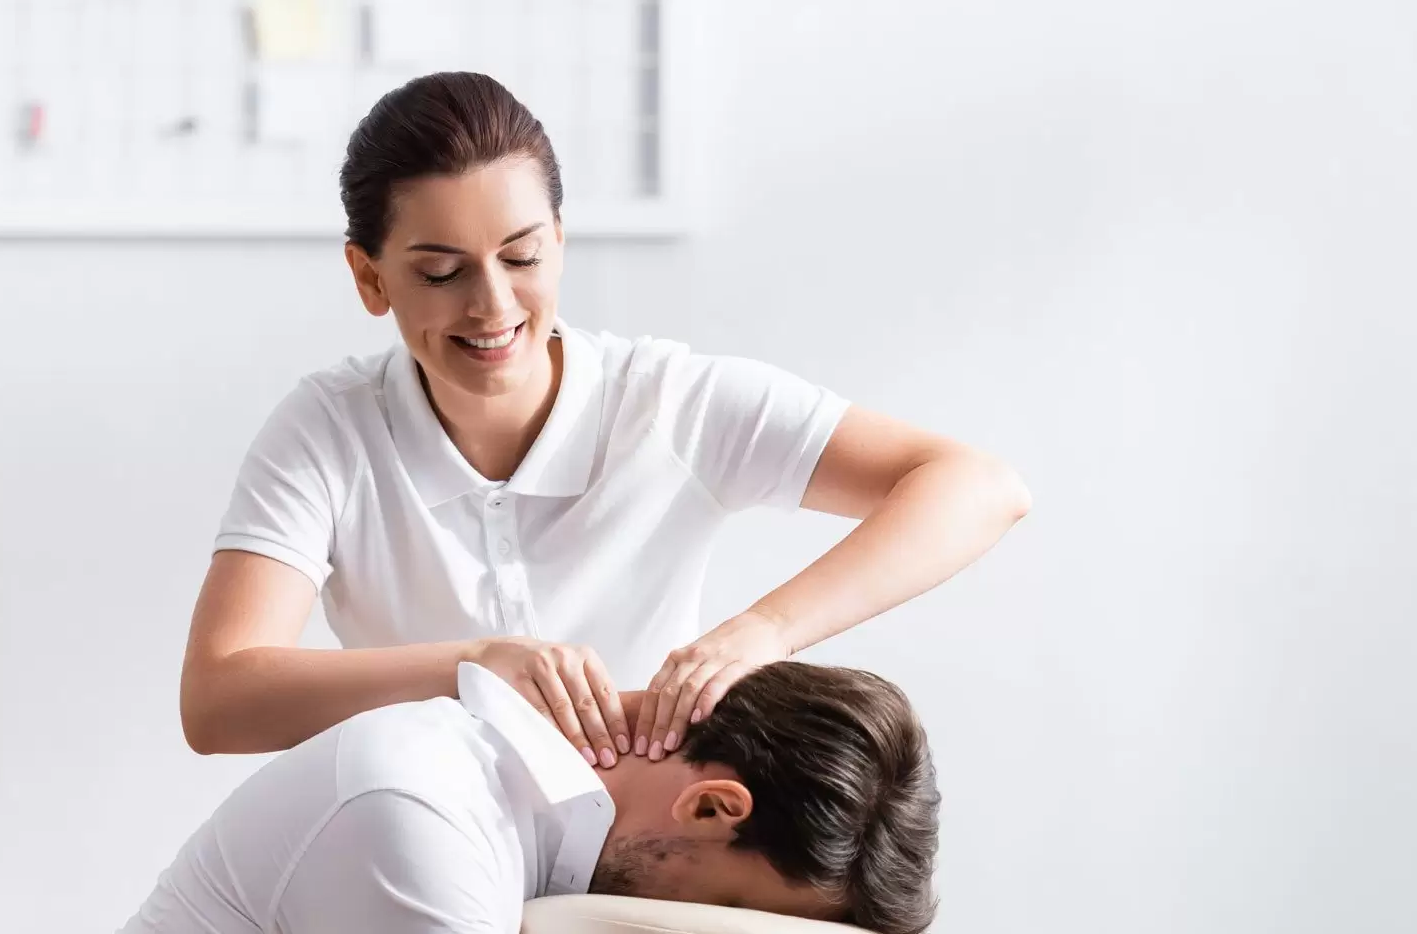 Bạn cần xin ý kiến của chuyên gia hoặc bác sĩ để massage phù hợp